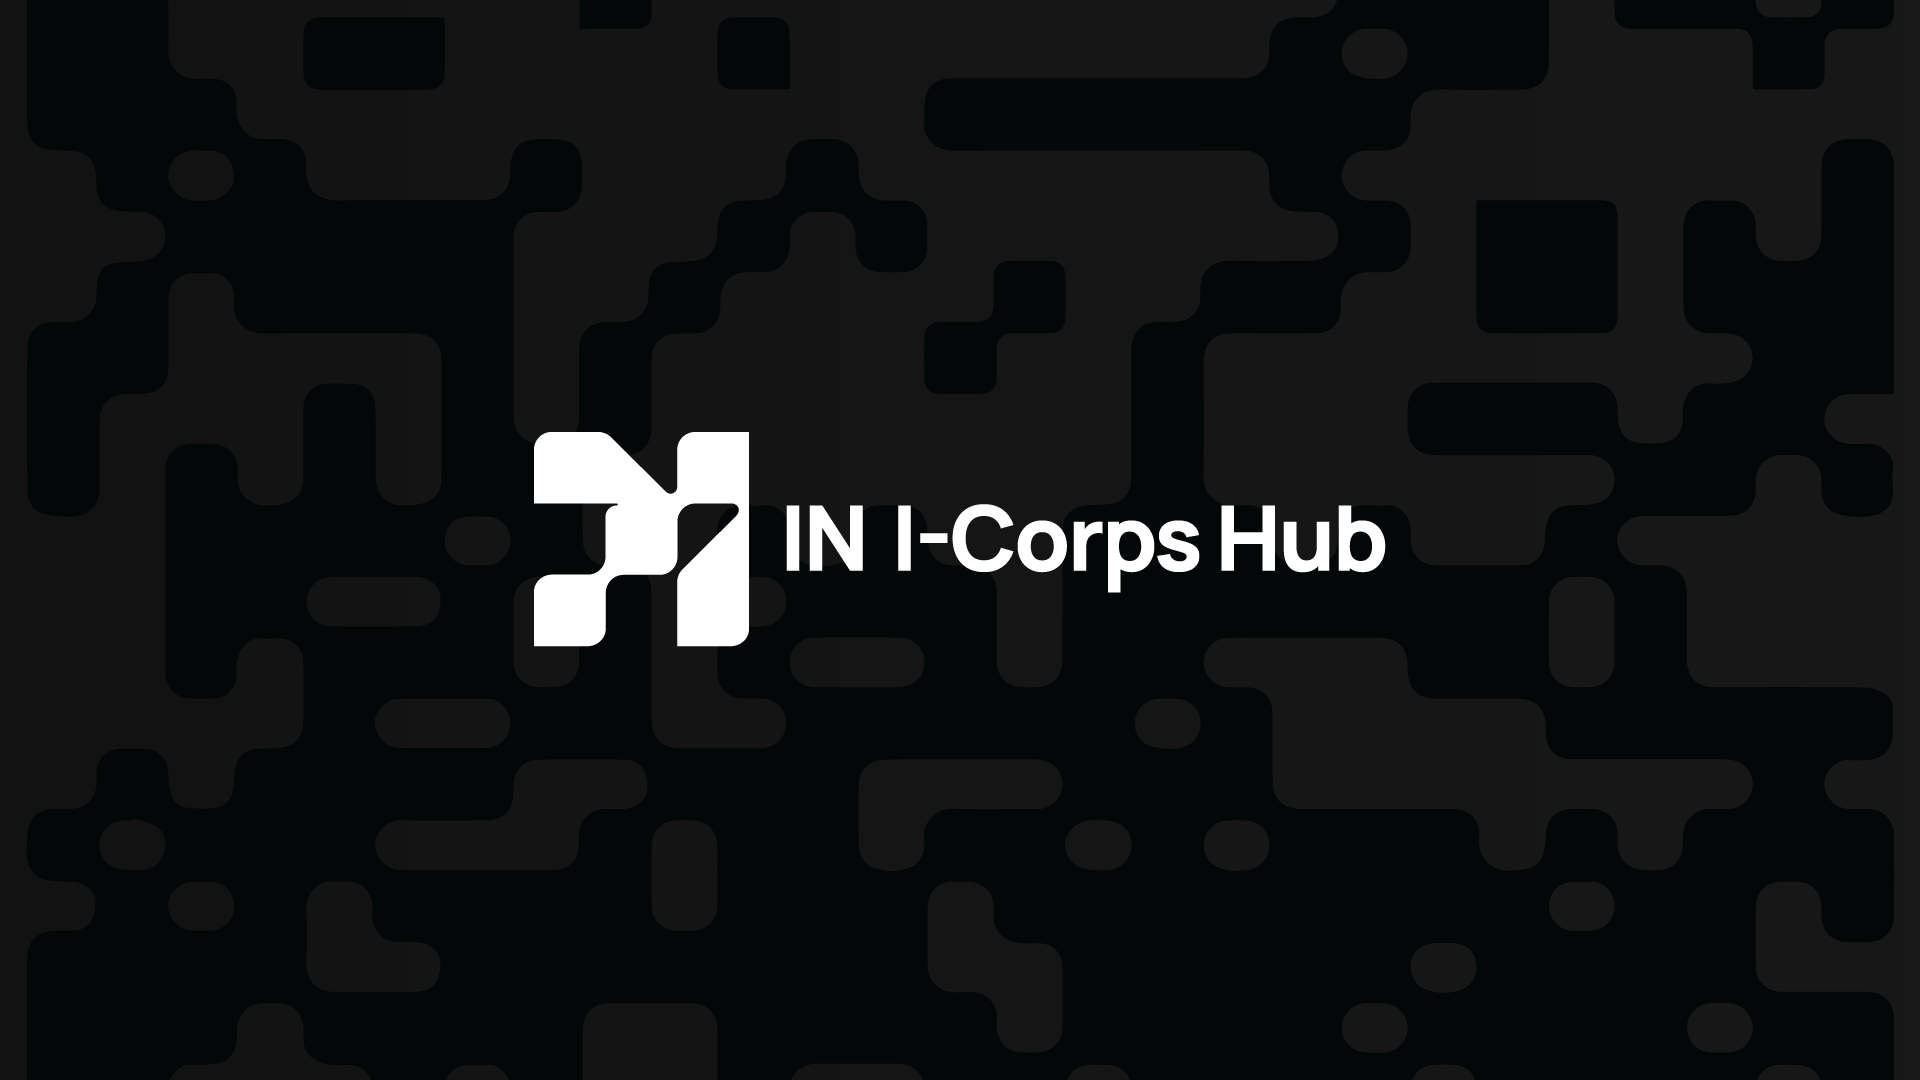 IN I-Corps Hub